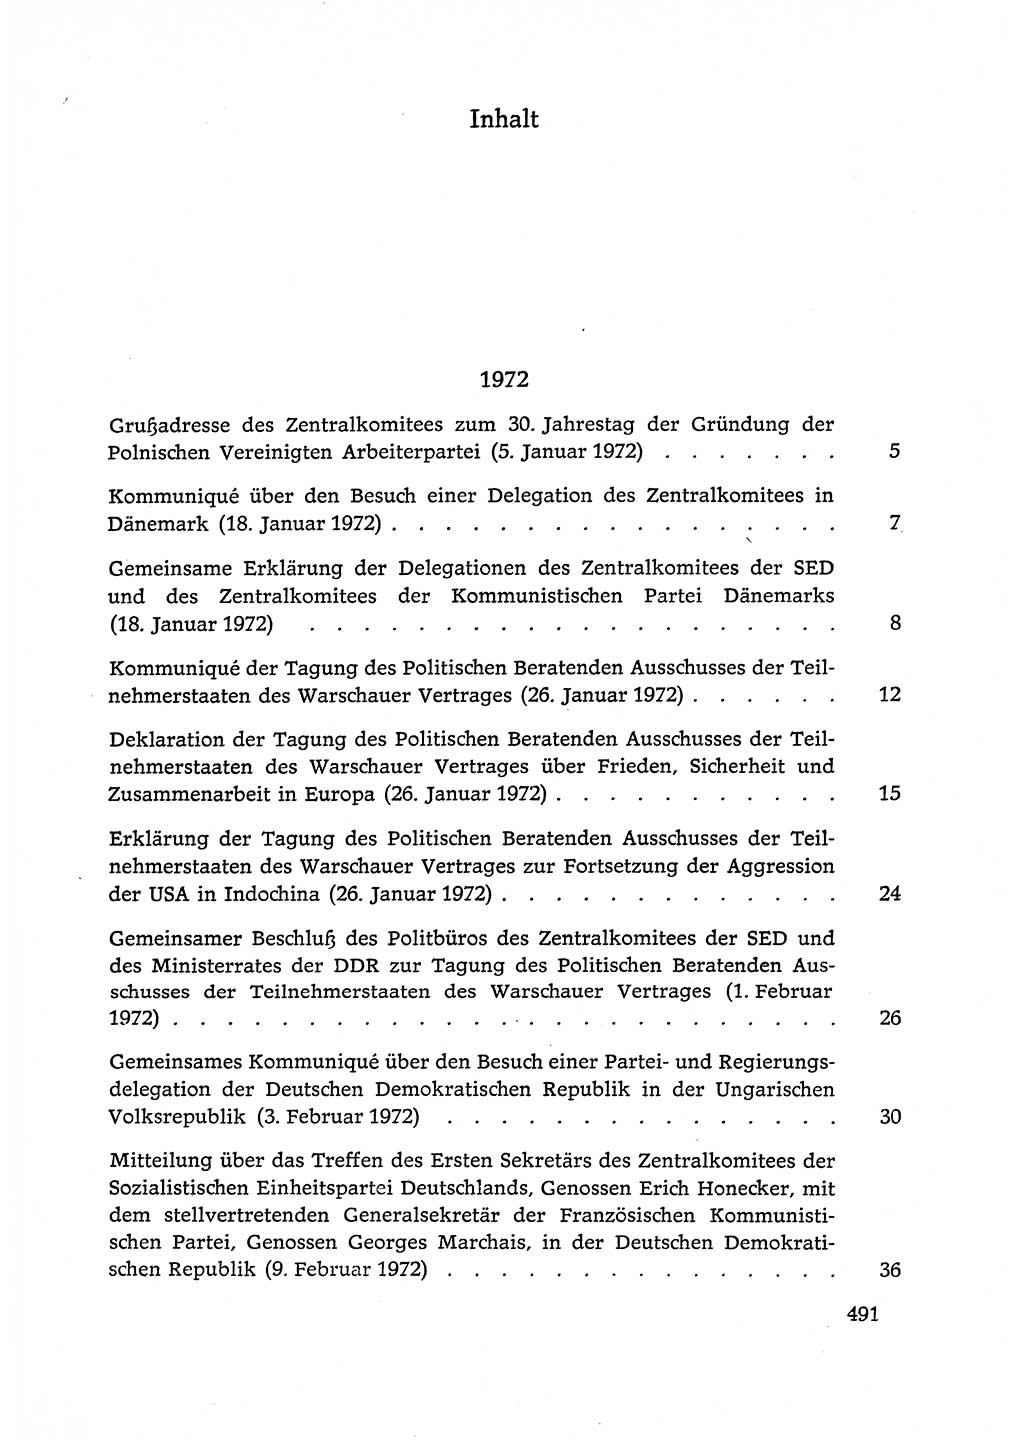 Dokumente der Sozialistischen Einheitspartei Deutschlands (SED) [Deutsche Demokratische Republik (DDR)] 1972-1973, Seite 491 (Dok. SED DDR 1972-1973, S. 491)